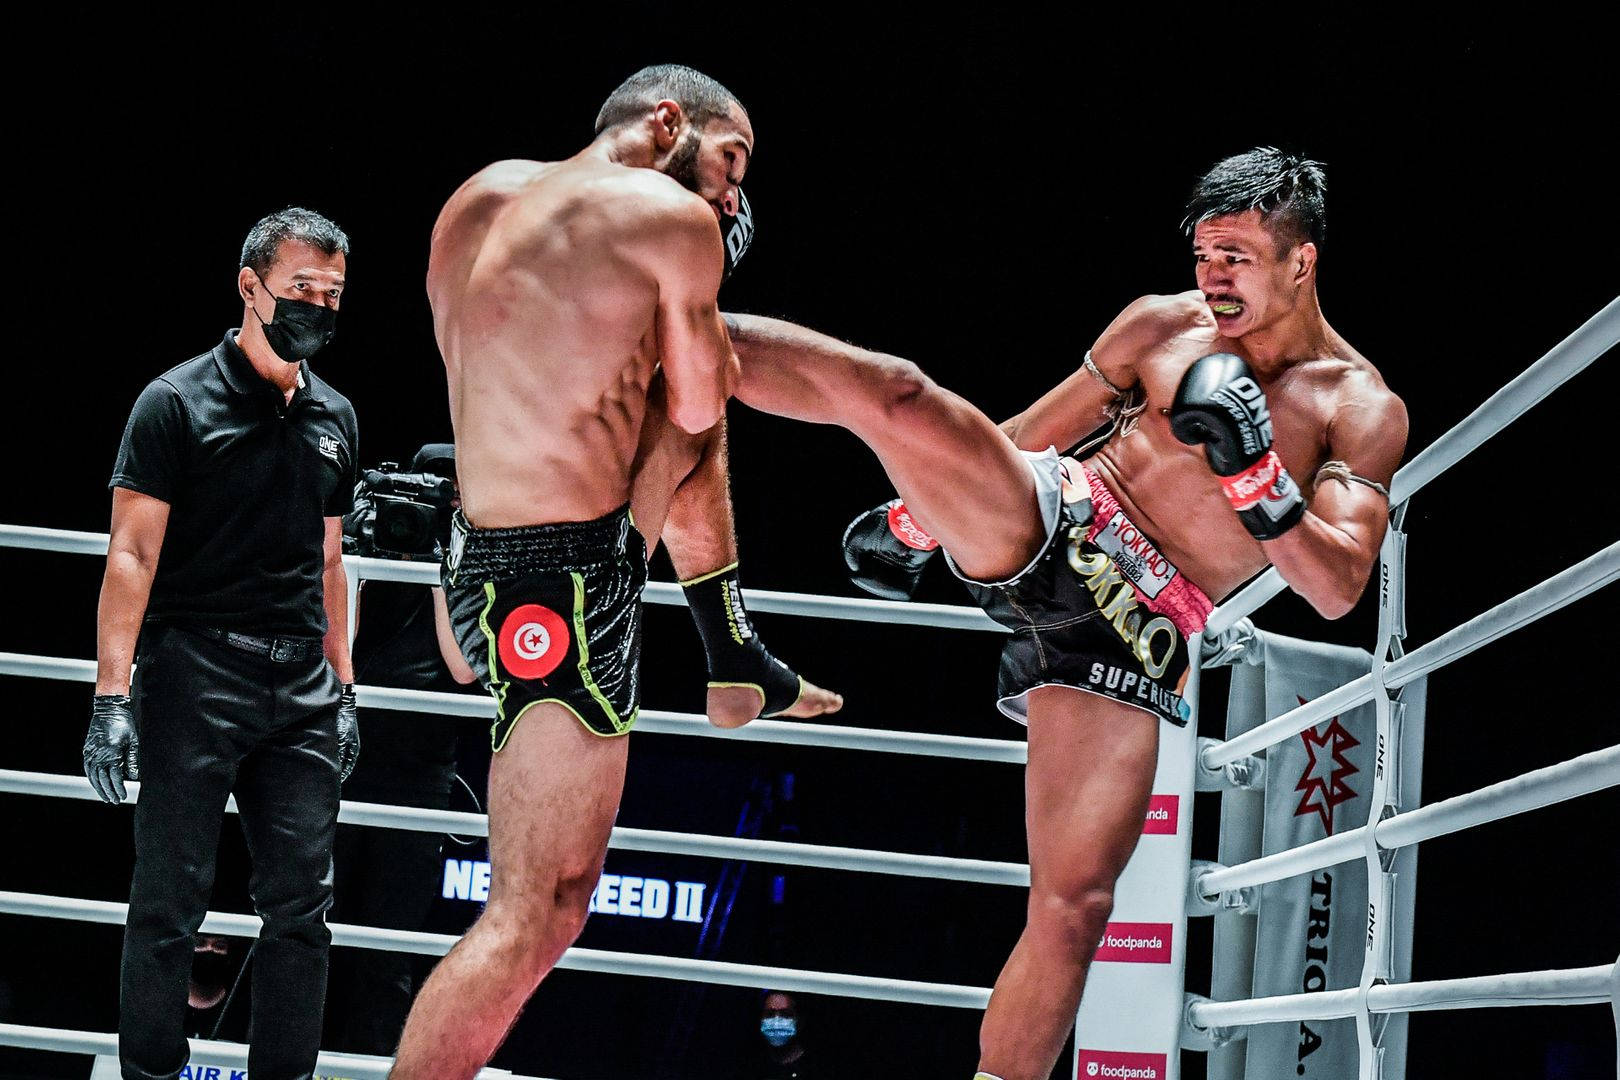 Superlek Kiatmuu9 Versus Fahdi Khaled Kickboxing Match Wallpaper